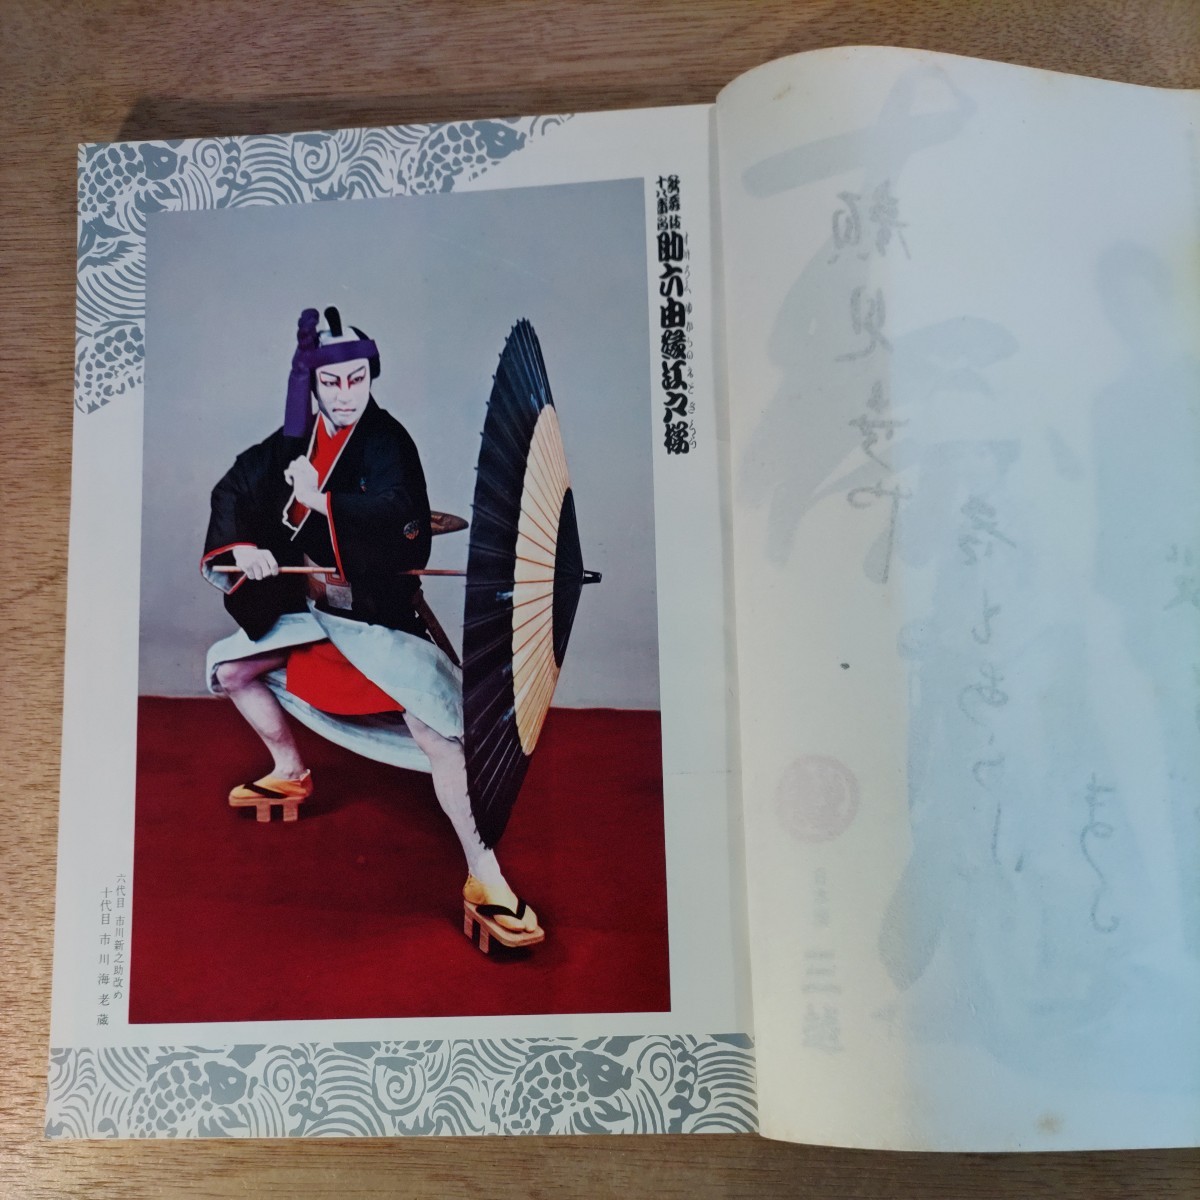 歌舞伎 パンフレット 1969年 昭和44年 歌舞伎座 顔見世 古本 印刷物 レトロ アンティーク コレクション レア 希少 市川海老蔵 襲名披露 _画像4